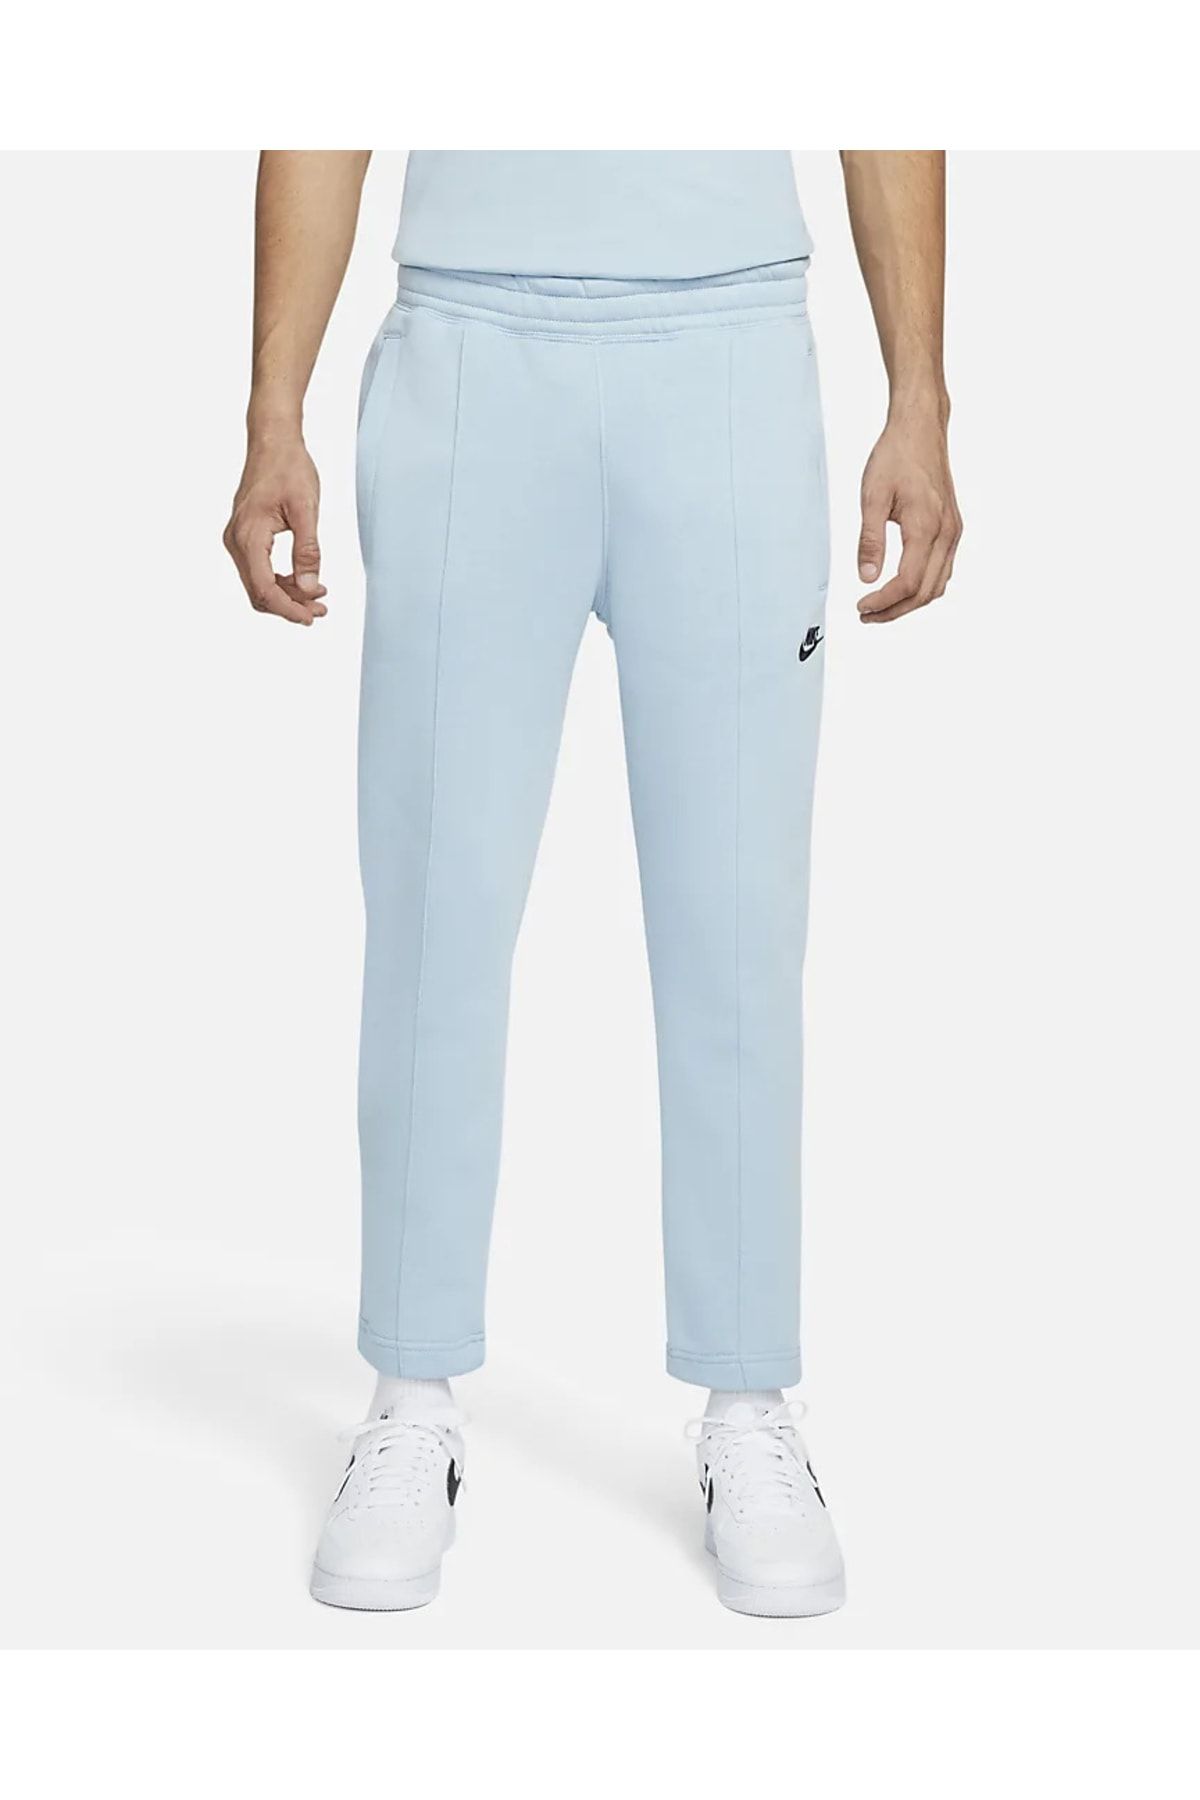 Nike Sportswear Erkek Mavi Polarlı Eşofman Altı Do0022-416